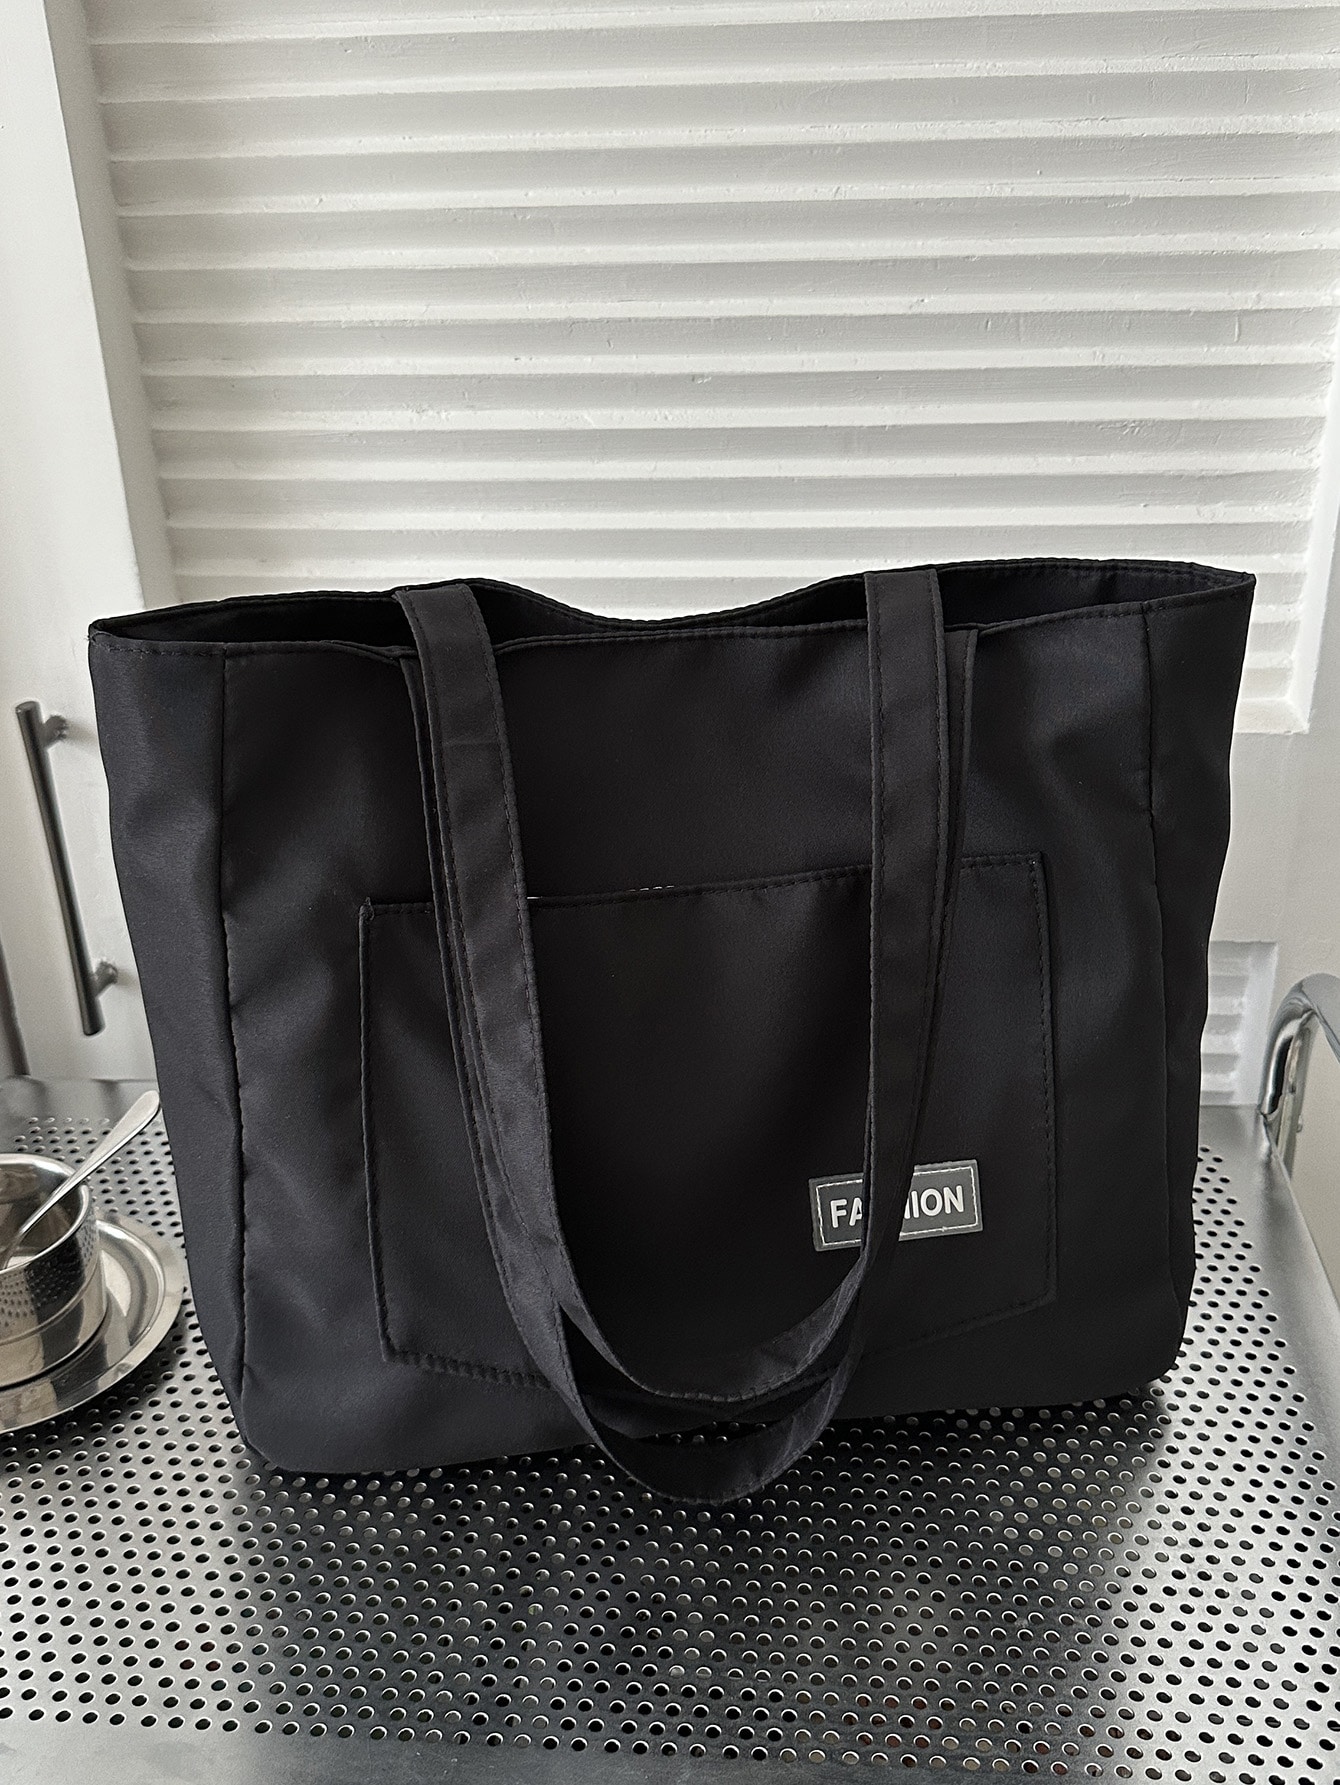 Женская большая сумка-тоут с буквенным принтом, черный новая сумка через плечо женская сумка нишевая губчатая сумка margiela многофункциональная наплечная сумка на плечо с полумесяцем